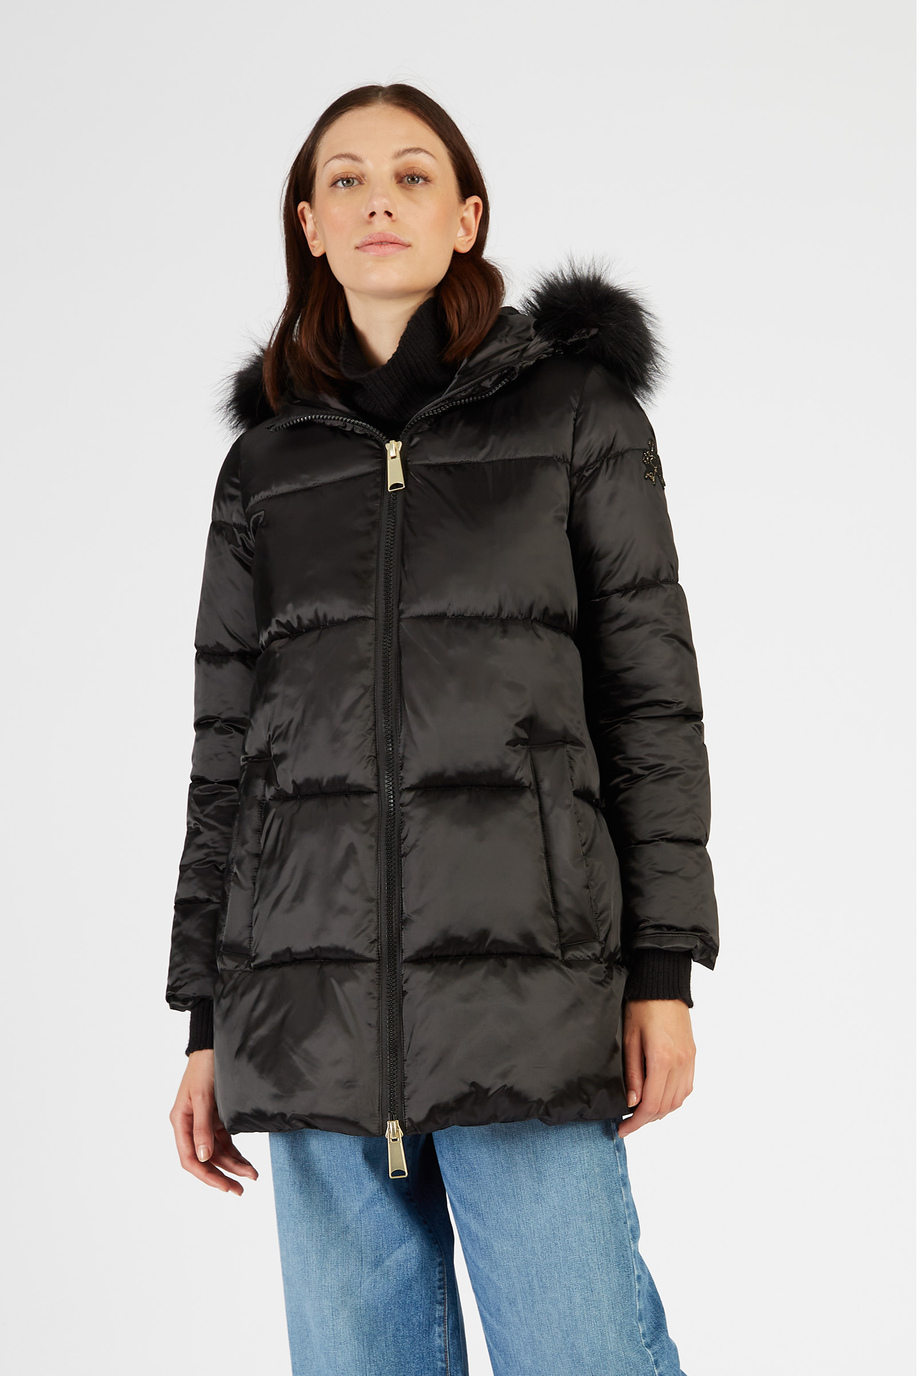 Women’s padded jacket Jet Set regular fit nylon effect | La Martina - Official Online Shop